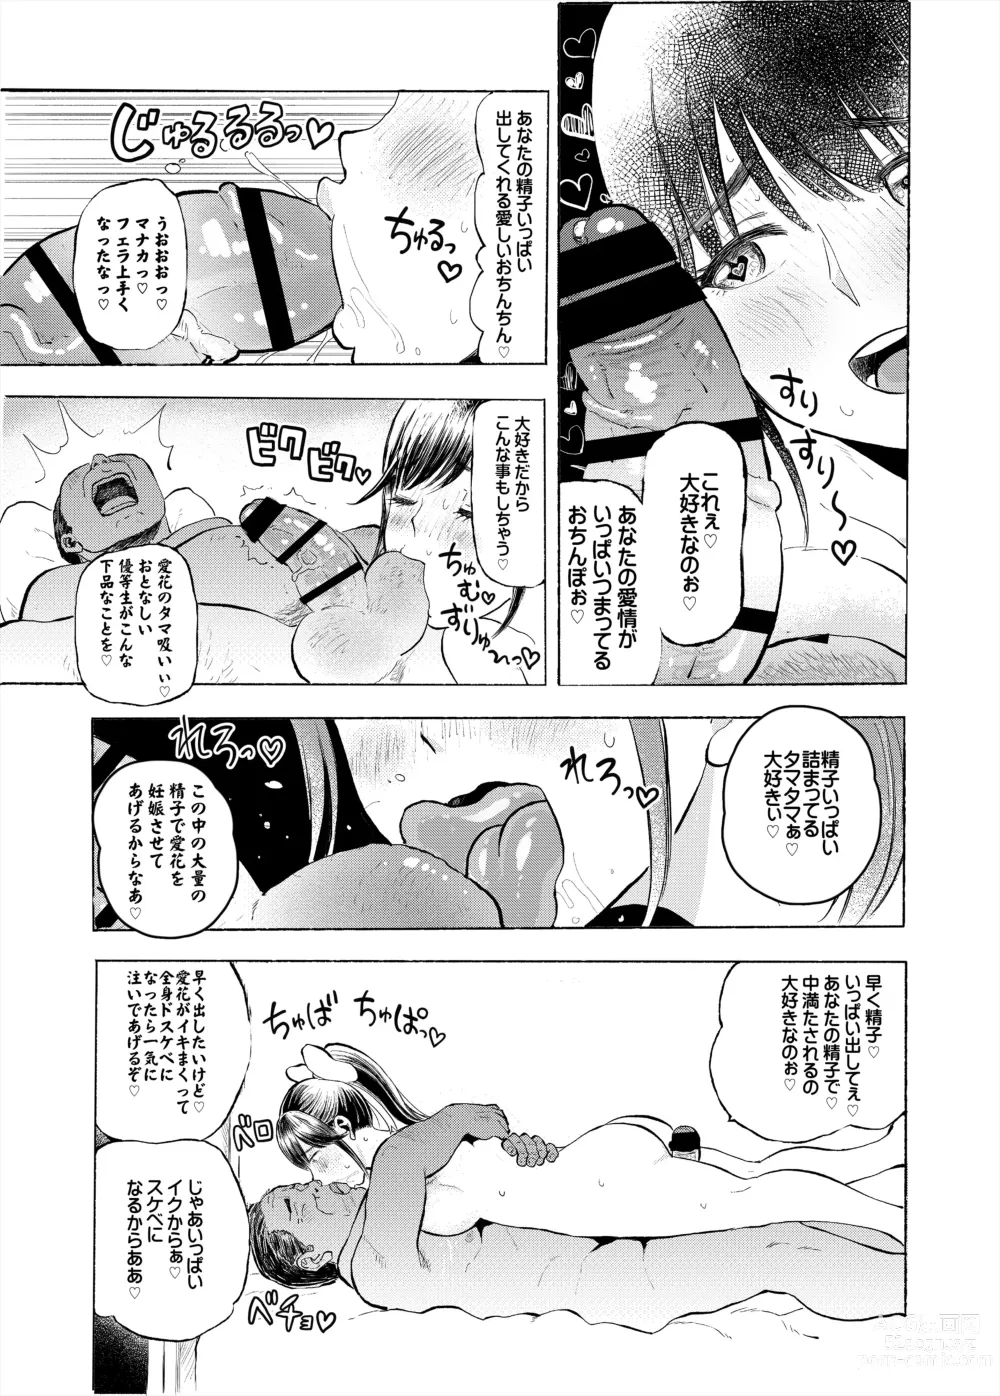 Page 7 of doujinshi Netorare Manaka Dainishi Tanetsuke Hen